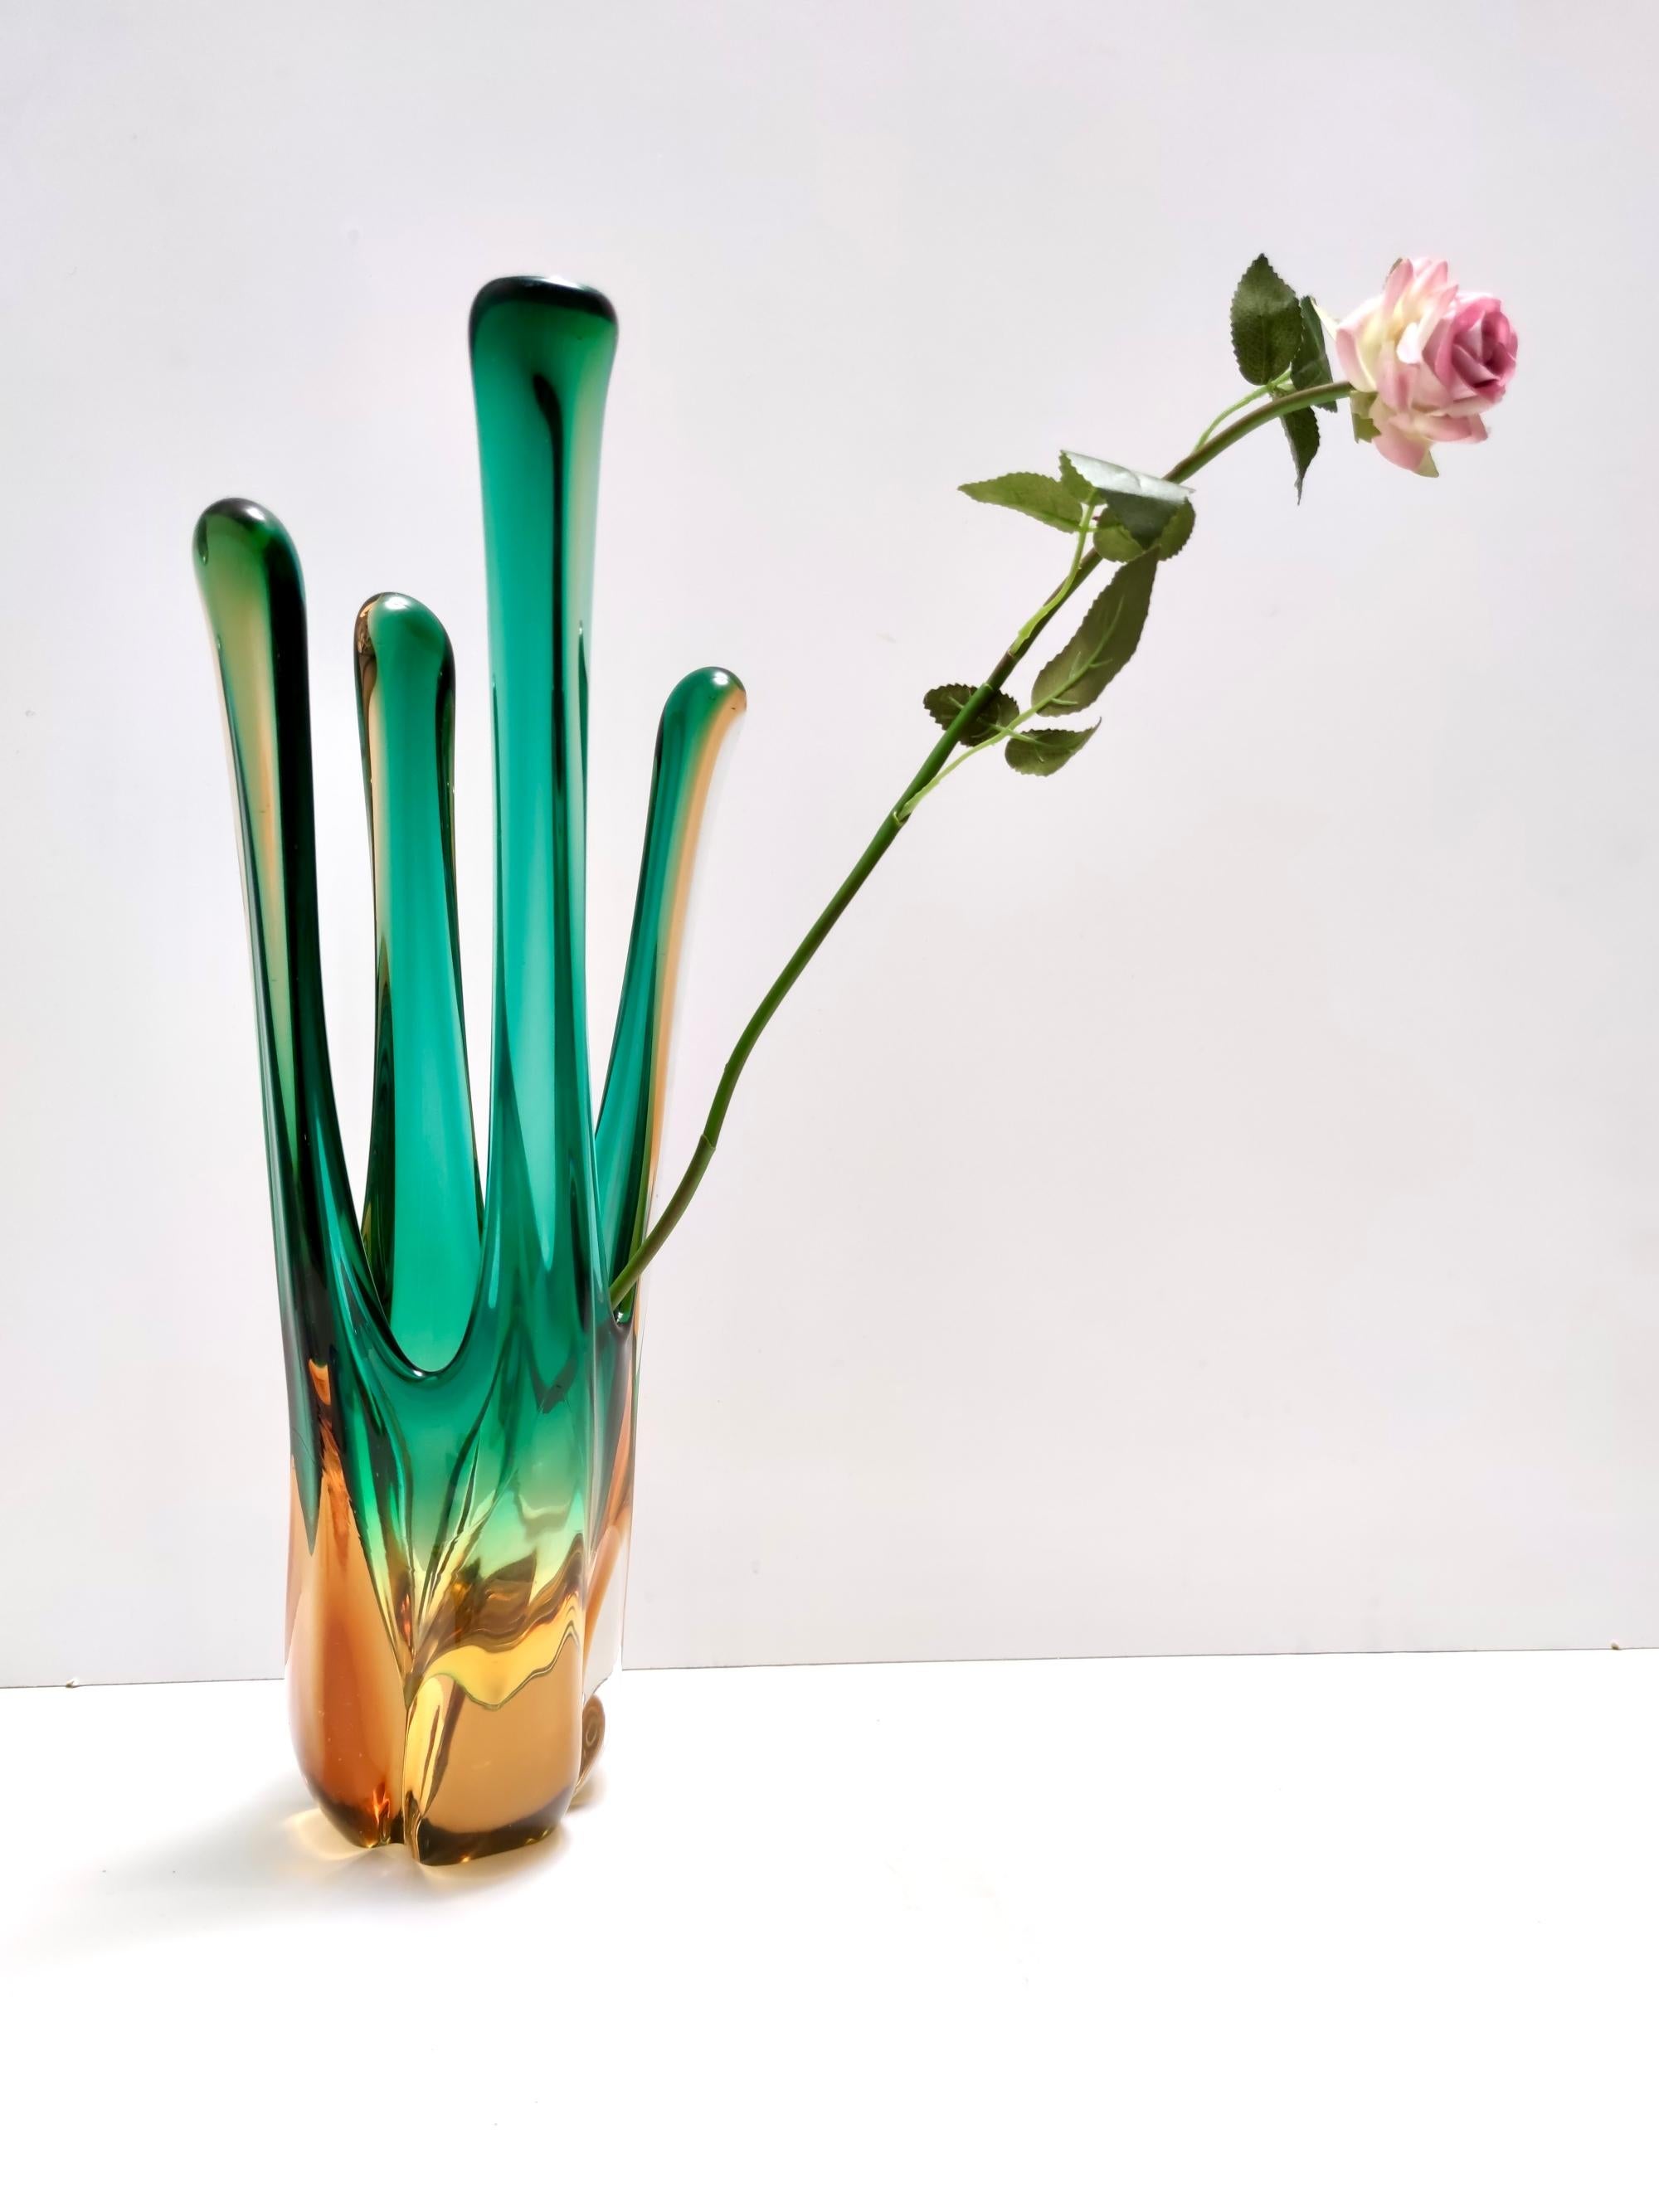 Hergestellt in Italien, 1950er - 1960er Jahre. 
Diese schöne Vase aus Murano-Glas aus der Mitte des Jahrhunderts ist in einer schönen grünen und bernsteinfarbenen Farbe gehalten.
Eine elegante Form, die die zeitlosen Techniken der